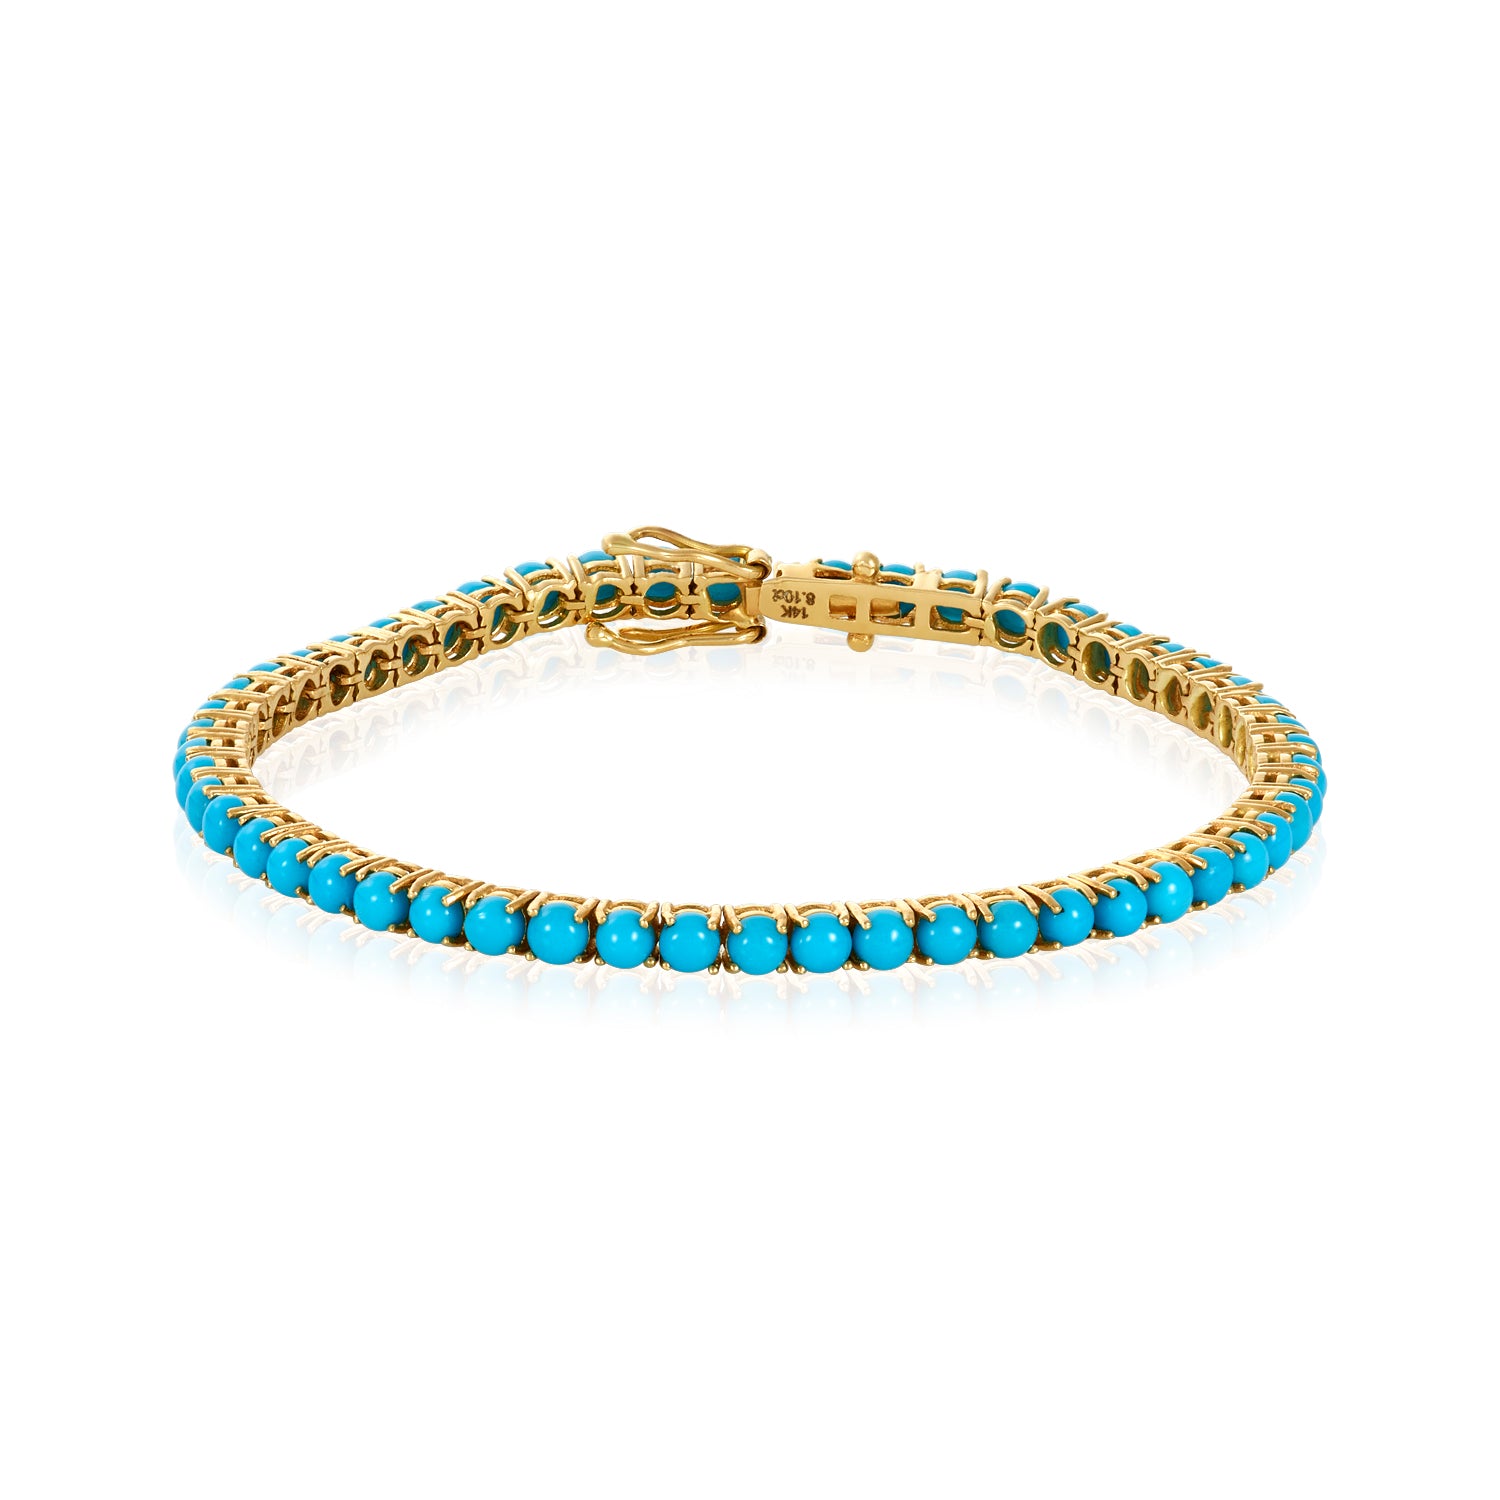 Sleeping beauty Turquoise Tennis Bracelet in 14k